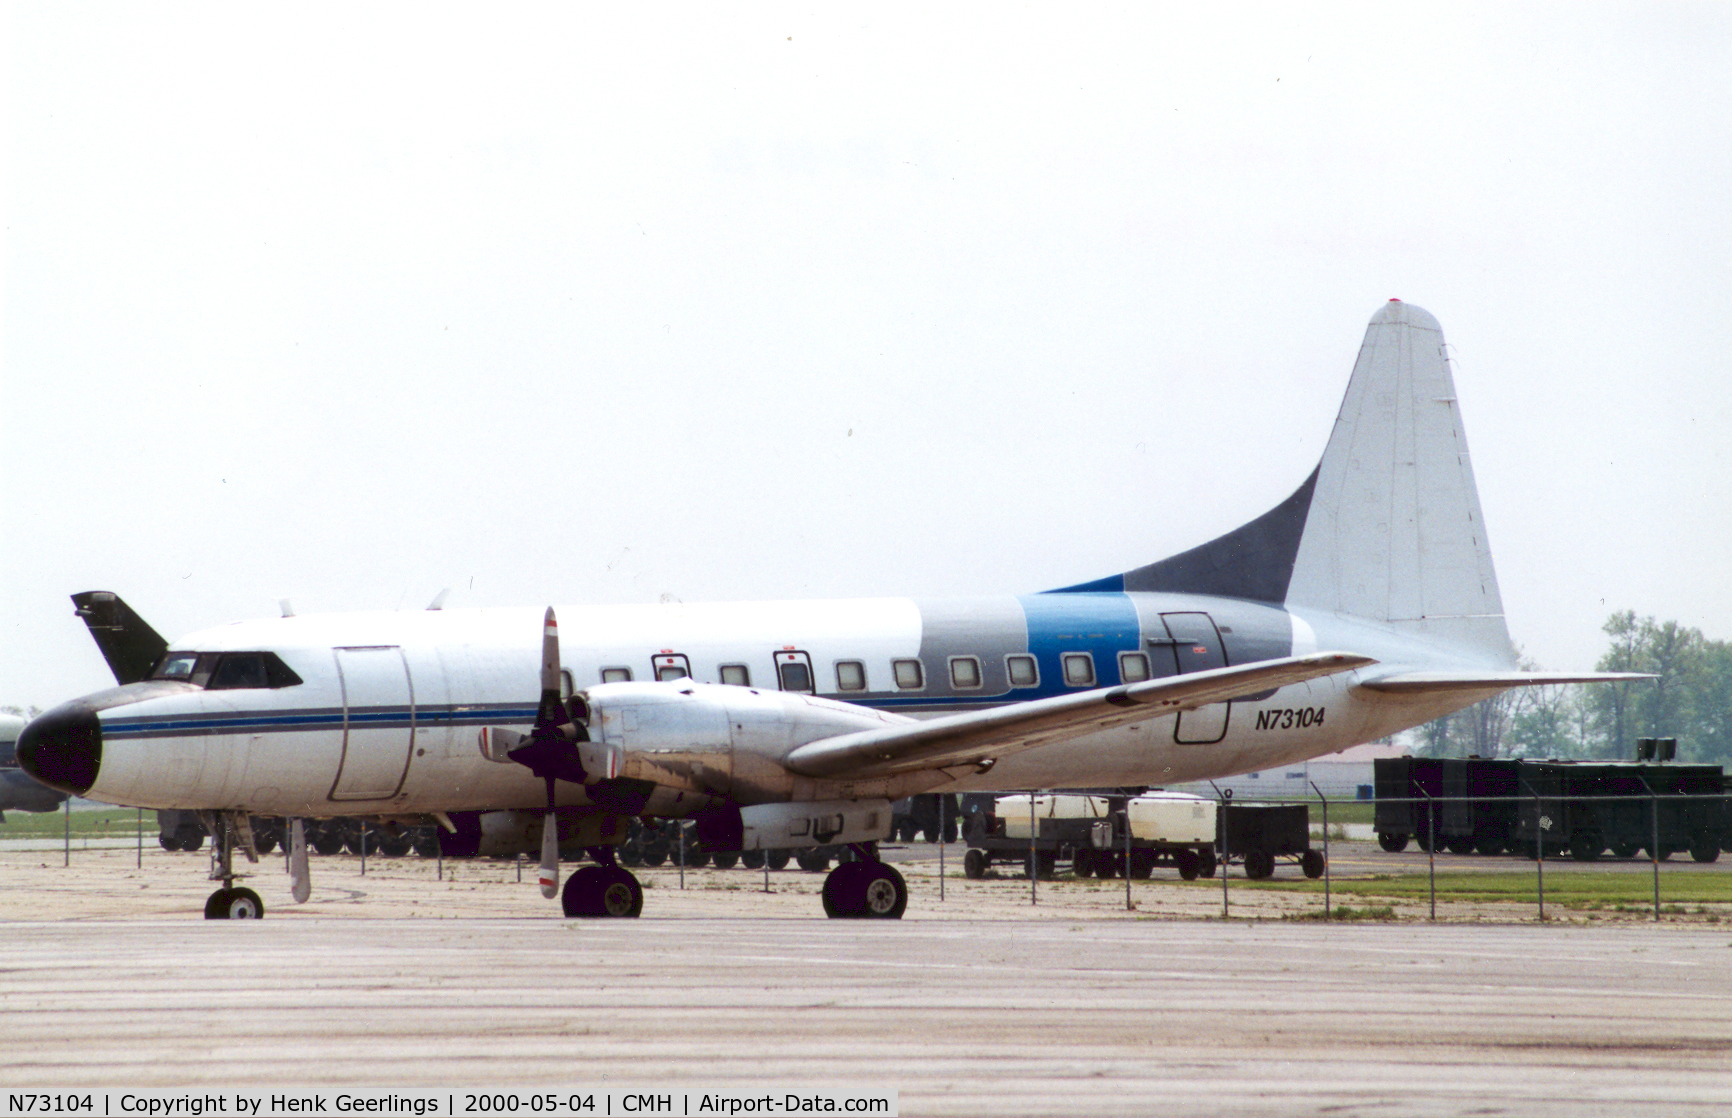 N73104, 1952 Convair 340-31 C/N 4, ex Renown